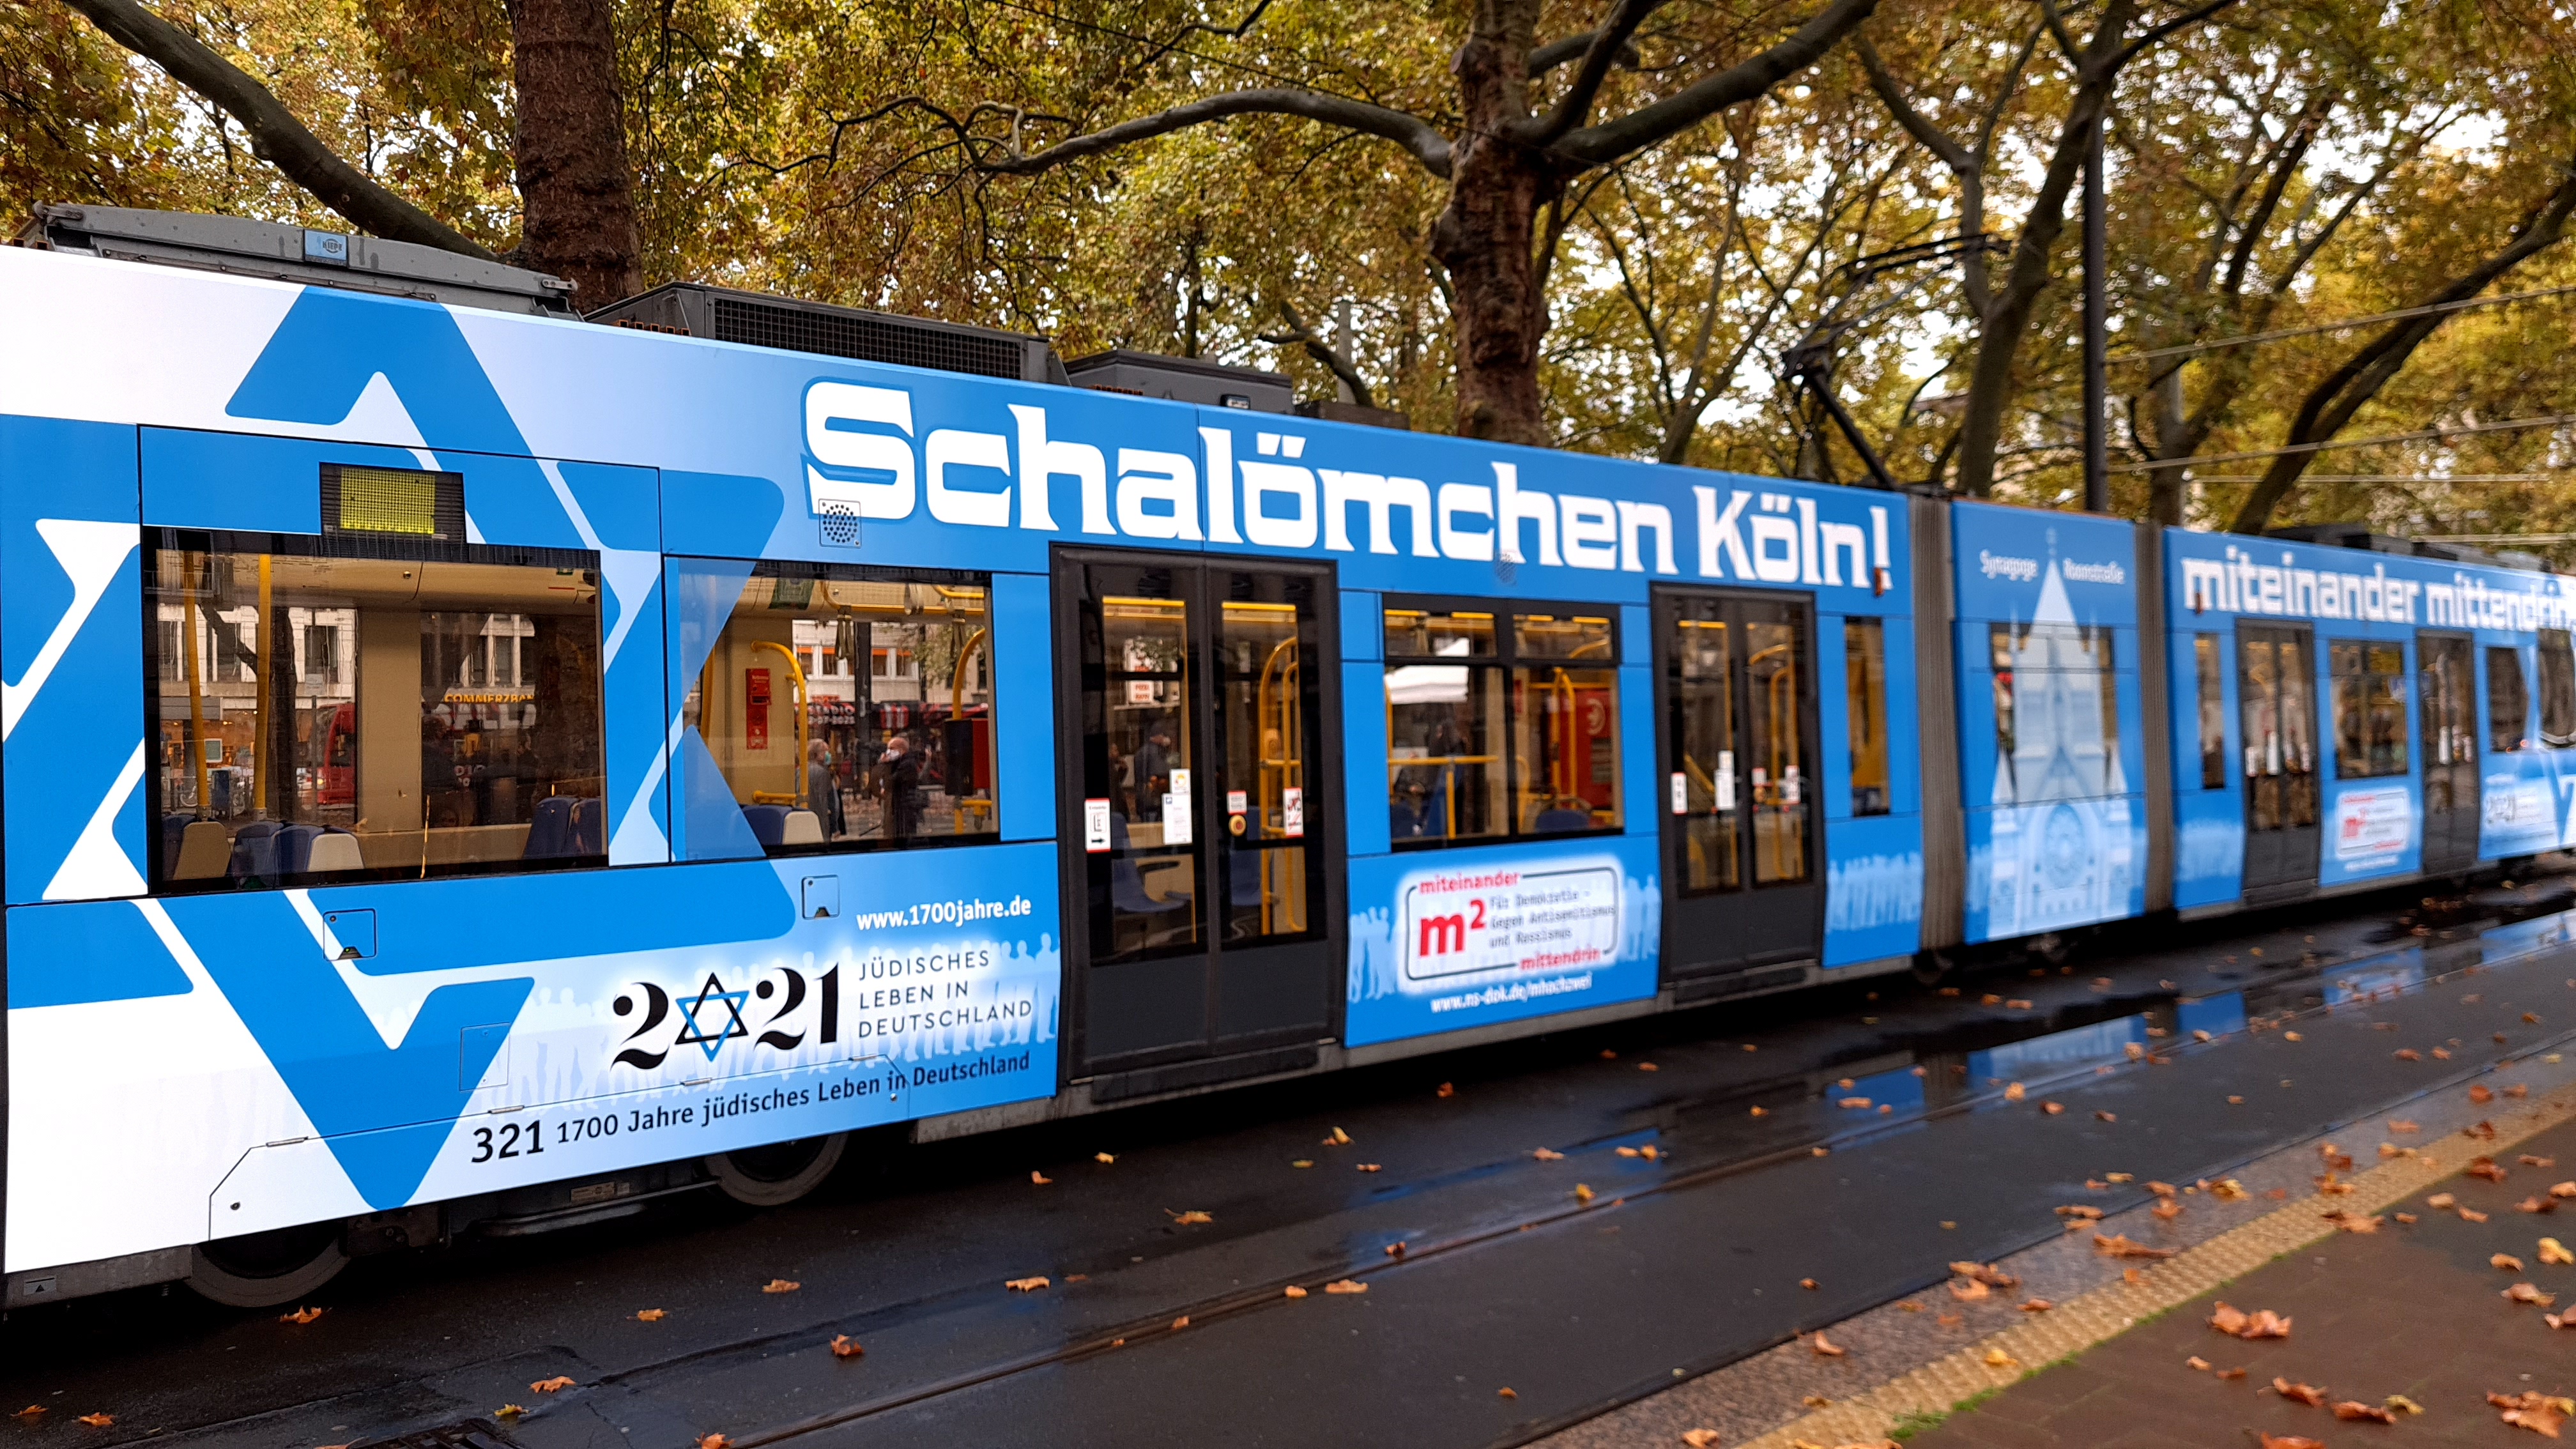 Die "Schalömchen"-Bahn macht im Kölner Schienennetz auf das Festjahr aufmerksam. Foto: 1700 Jahre jüdisches Leben in Deutschland e. V.